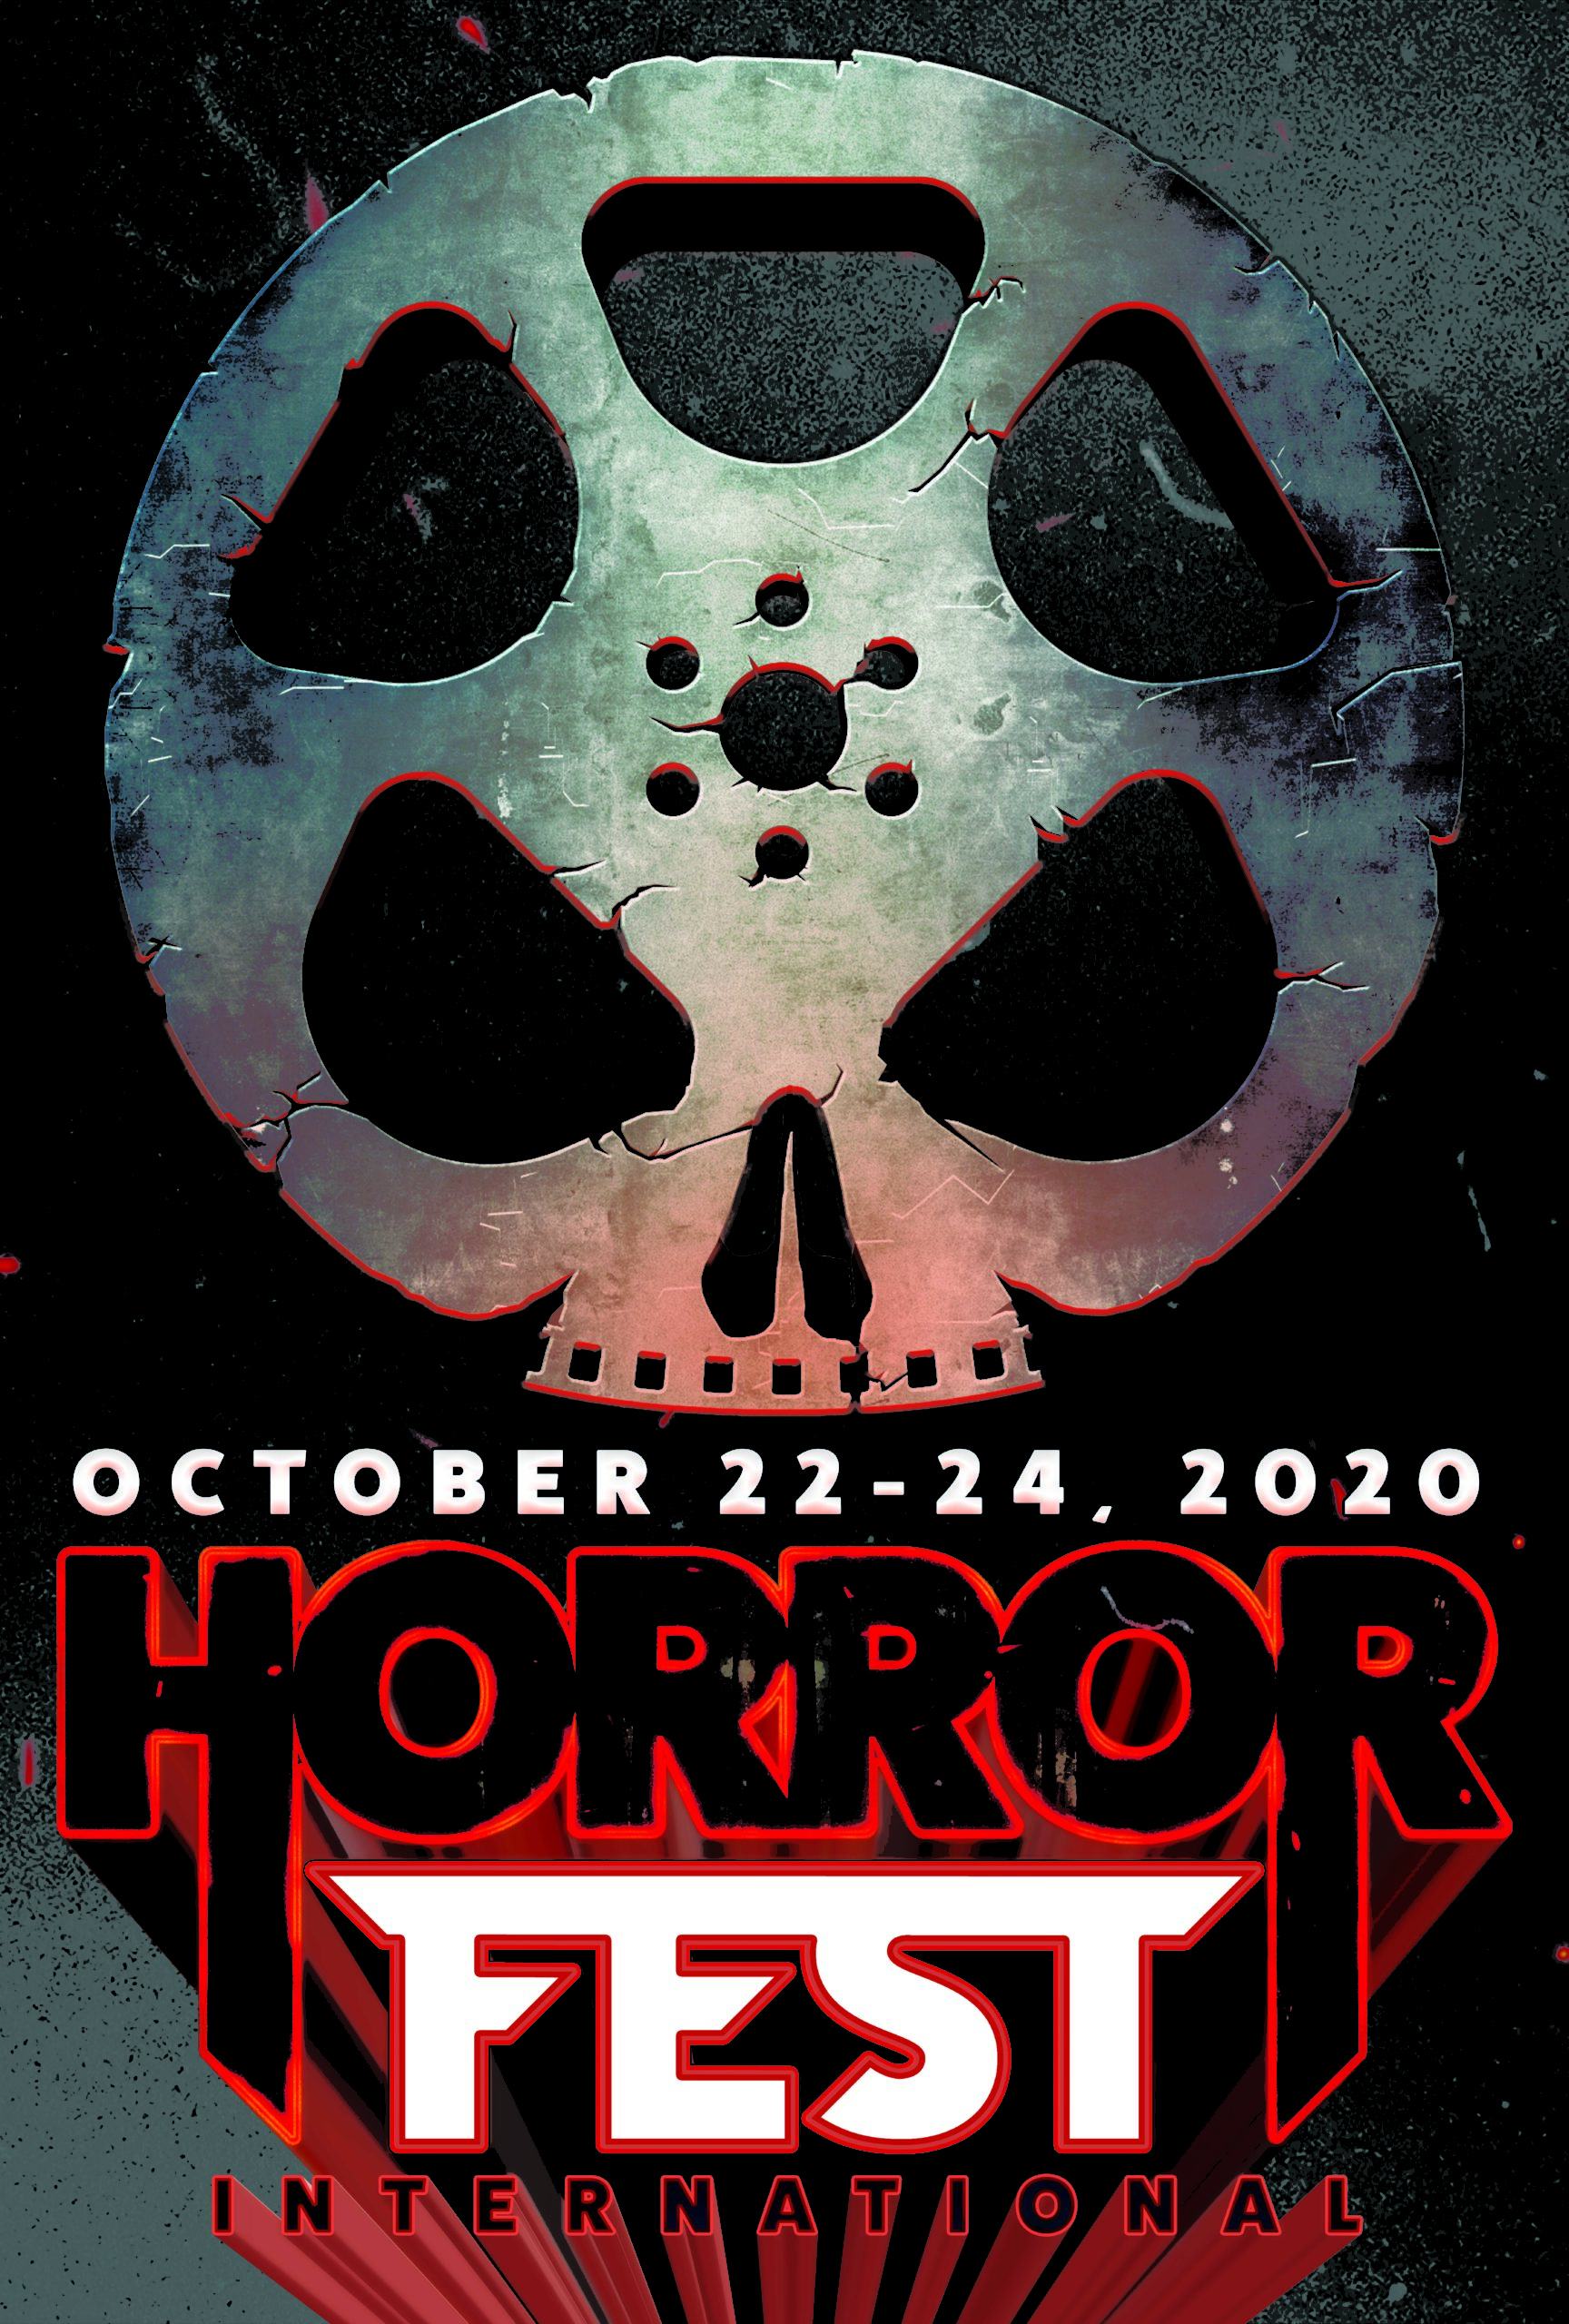 Genrebased film festival ‘Horrorfest International’ to be highlighted